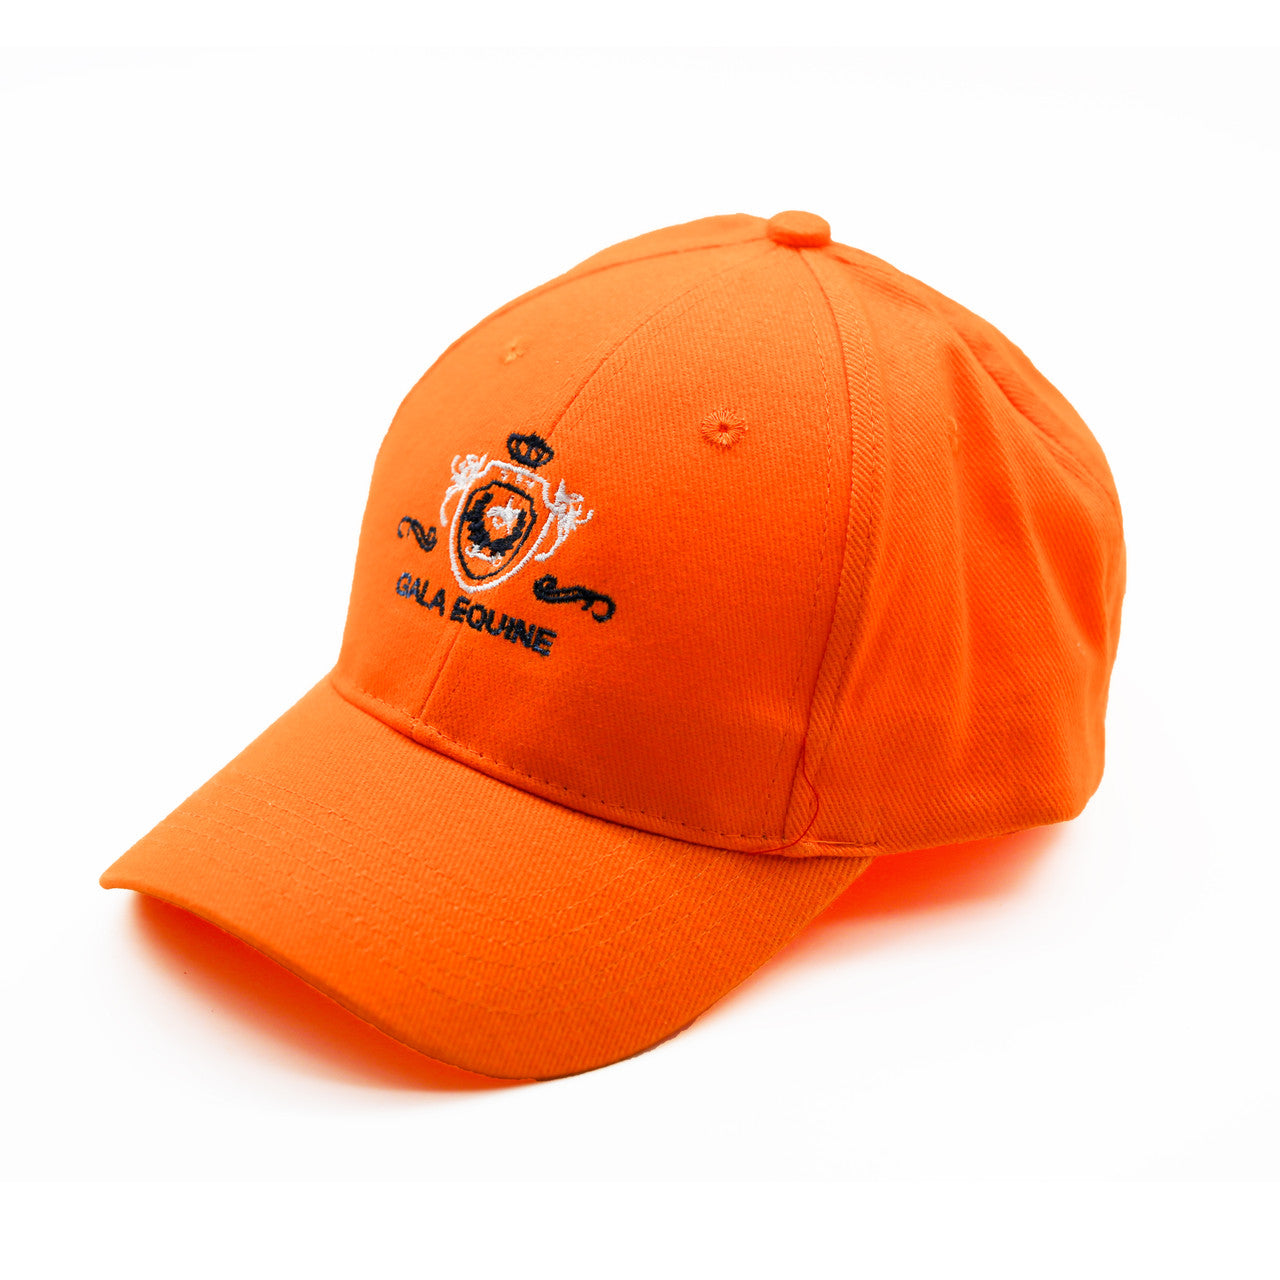 Cap - Orange